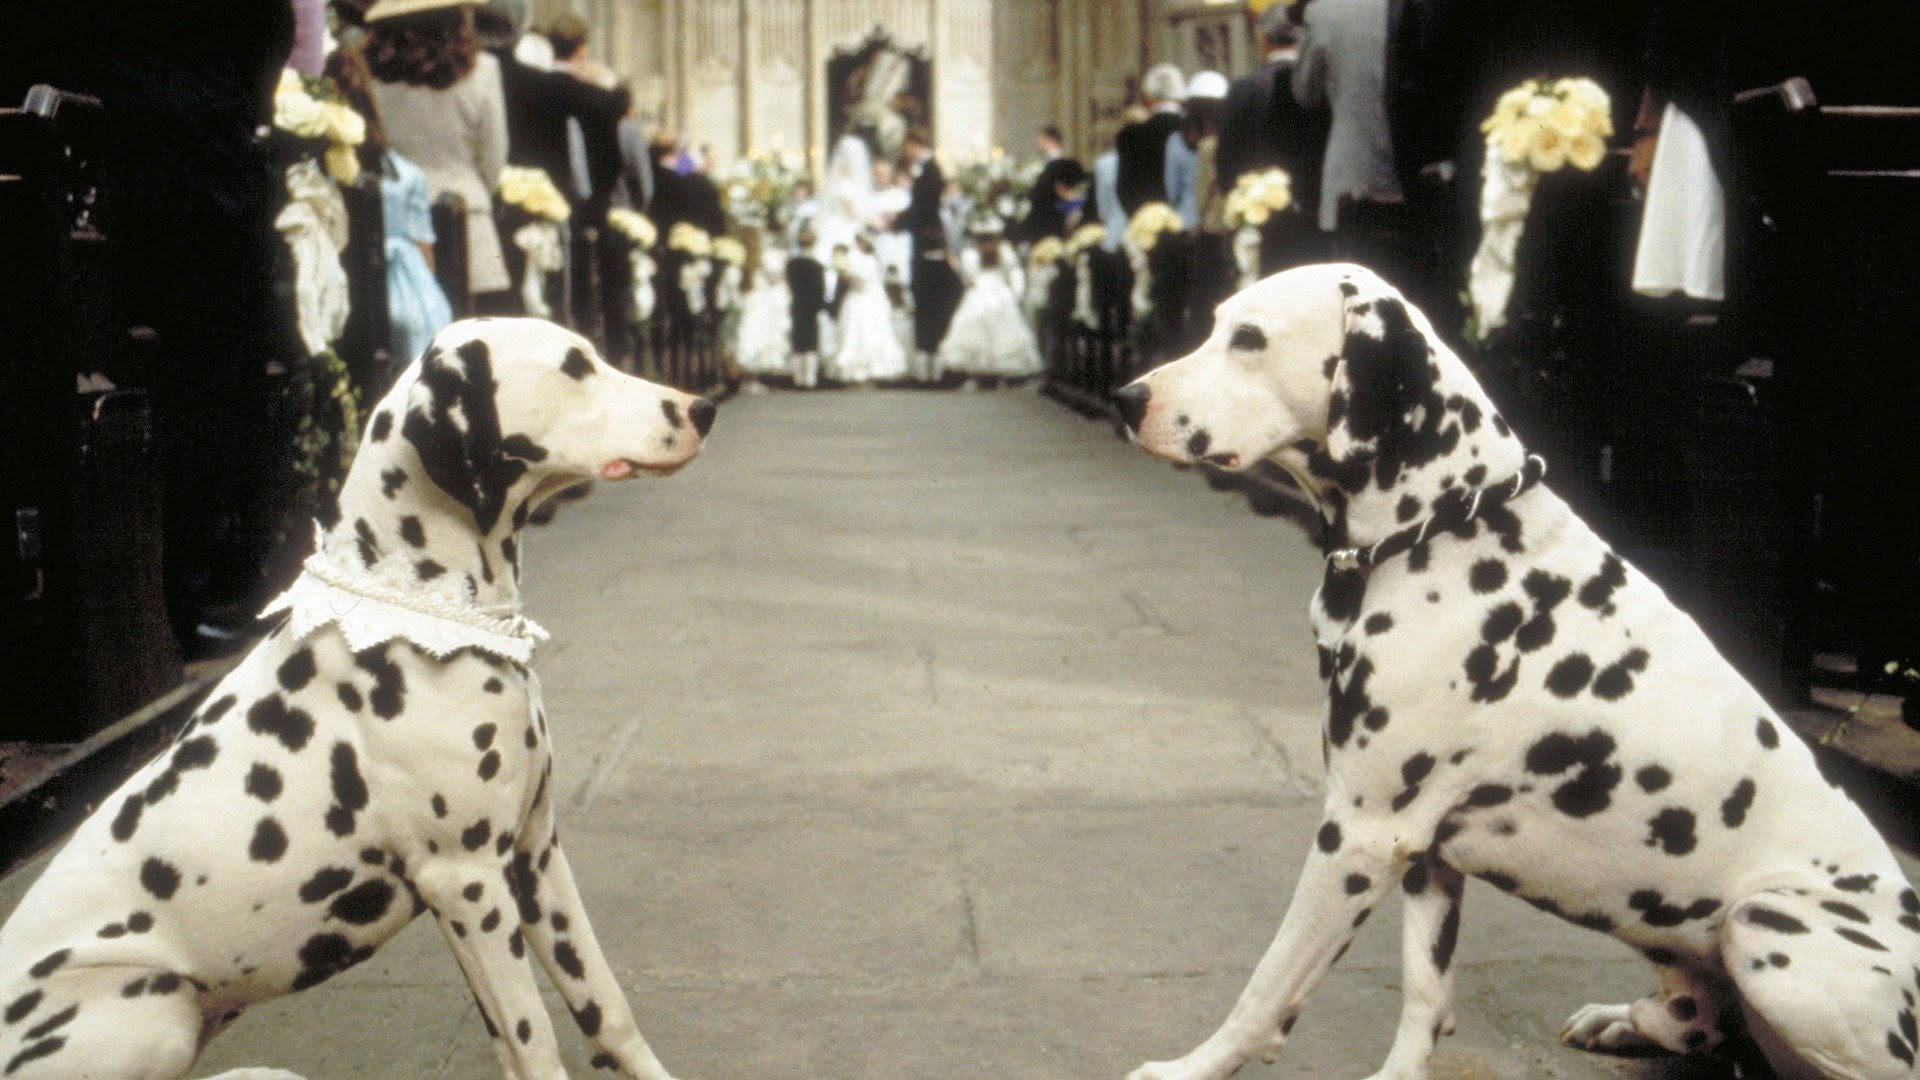 101 Dalmatians On Wedding